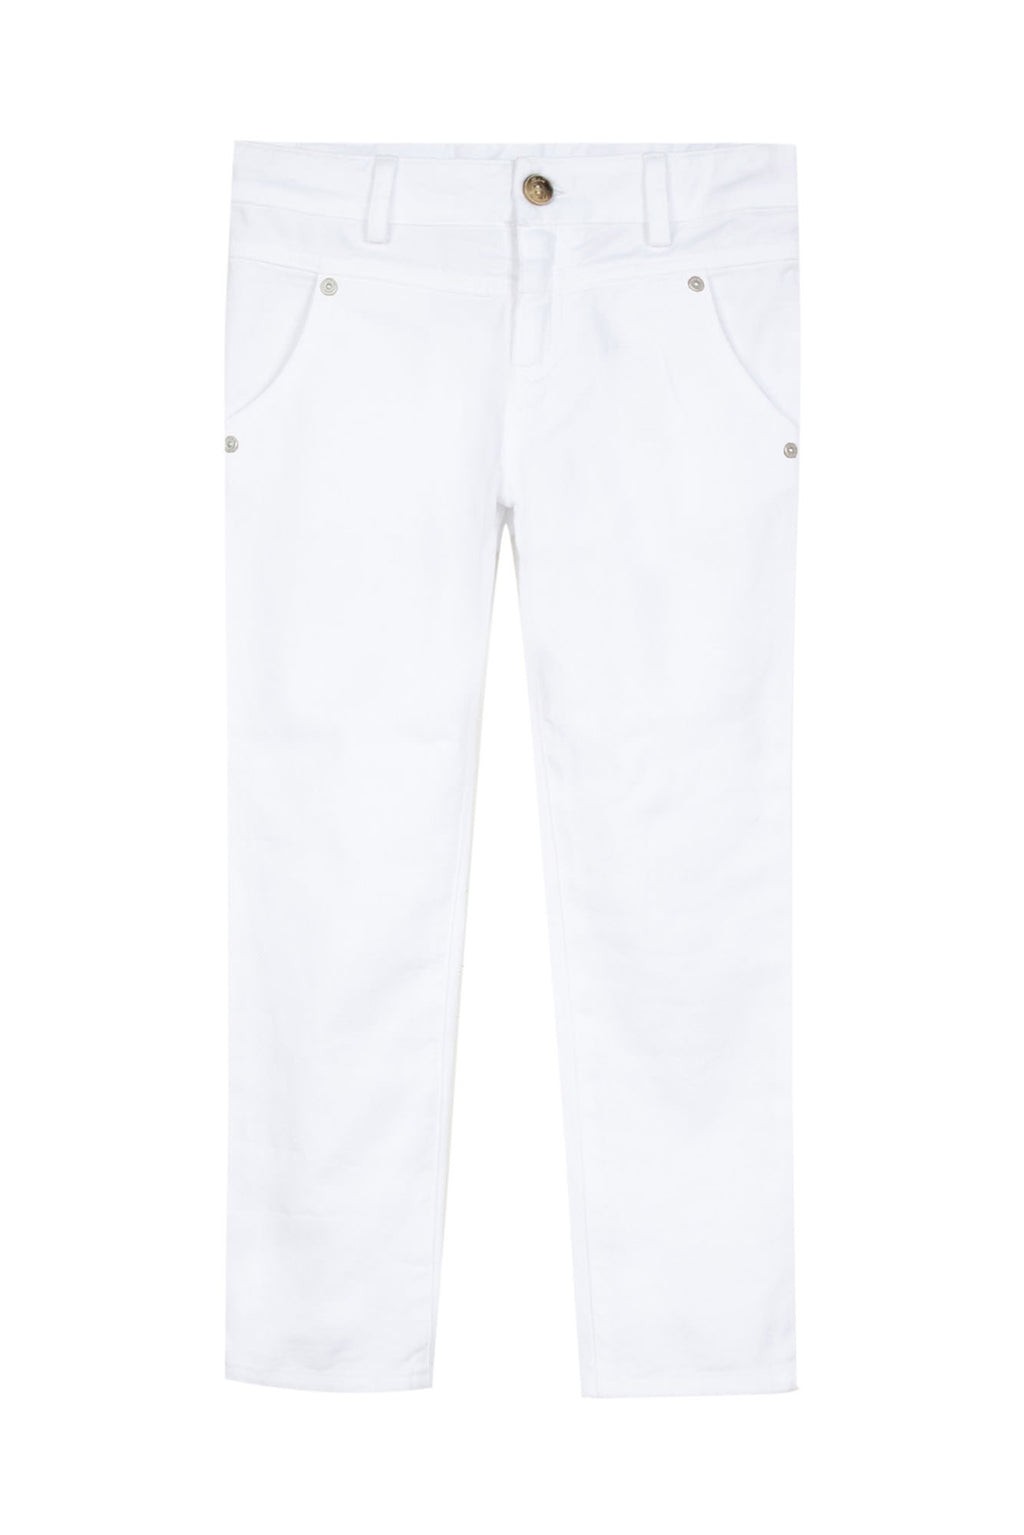 Pantalon - Sergé strech blanc